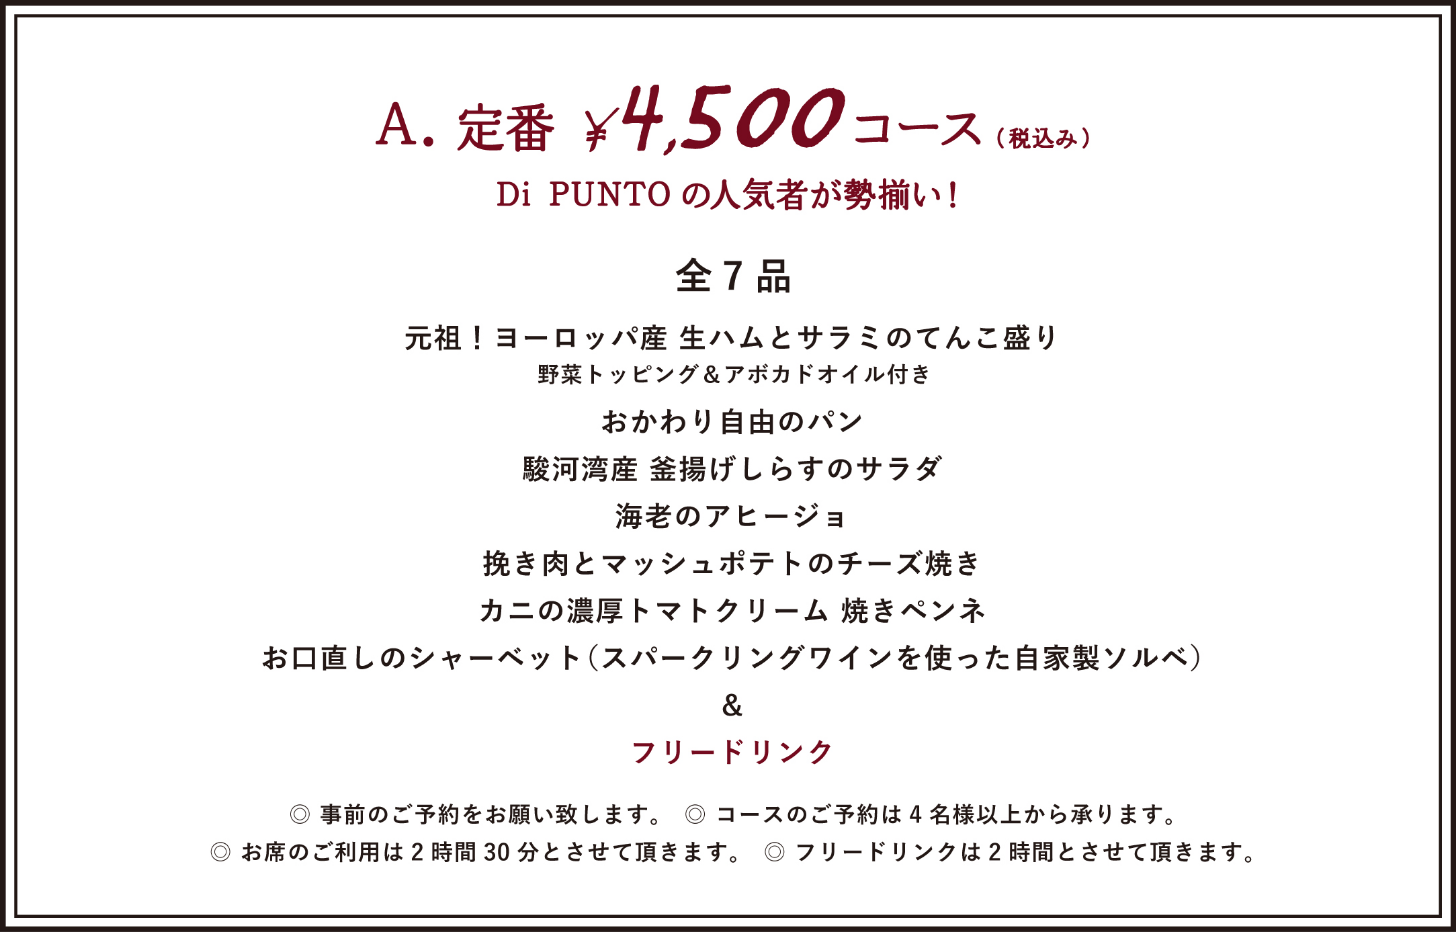 ¥4,500 COURSE